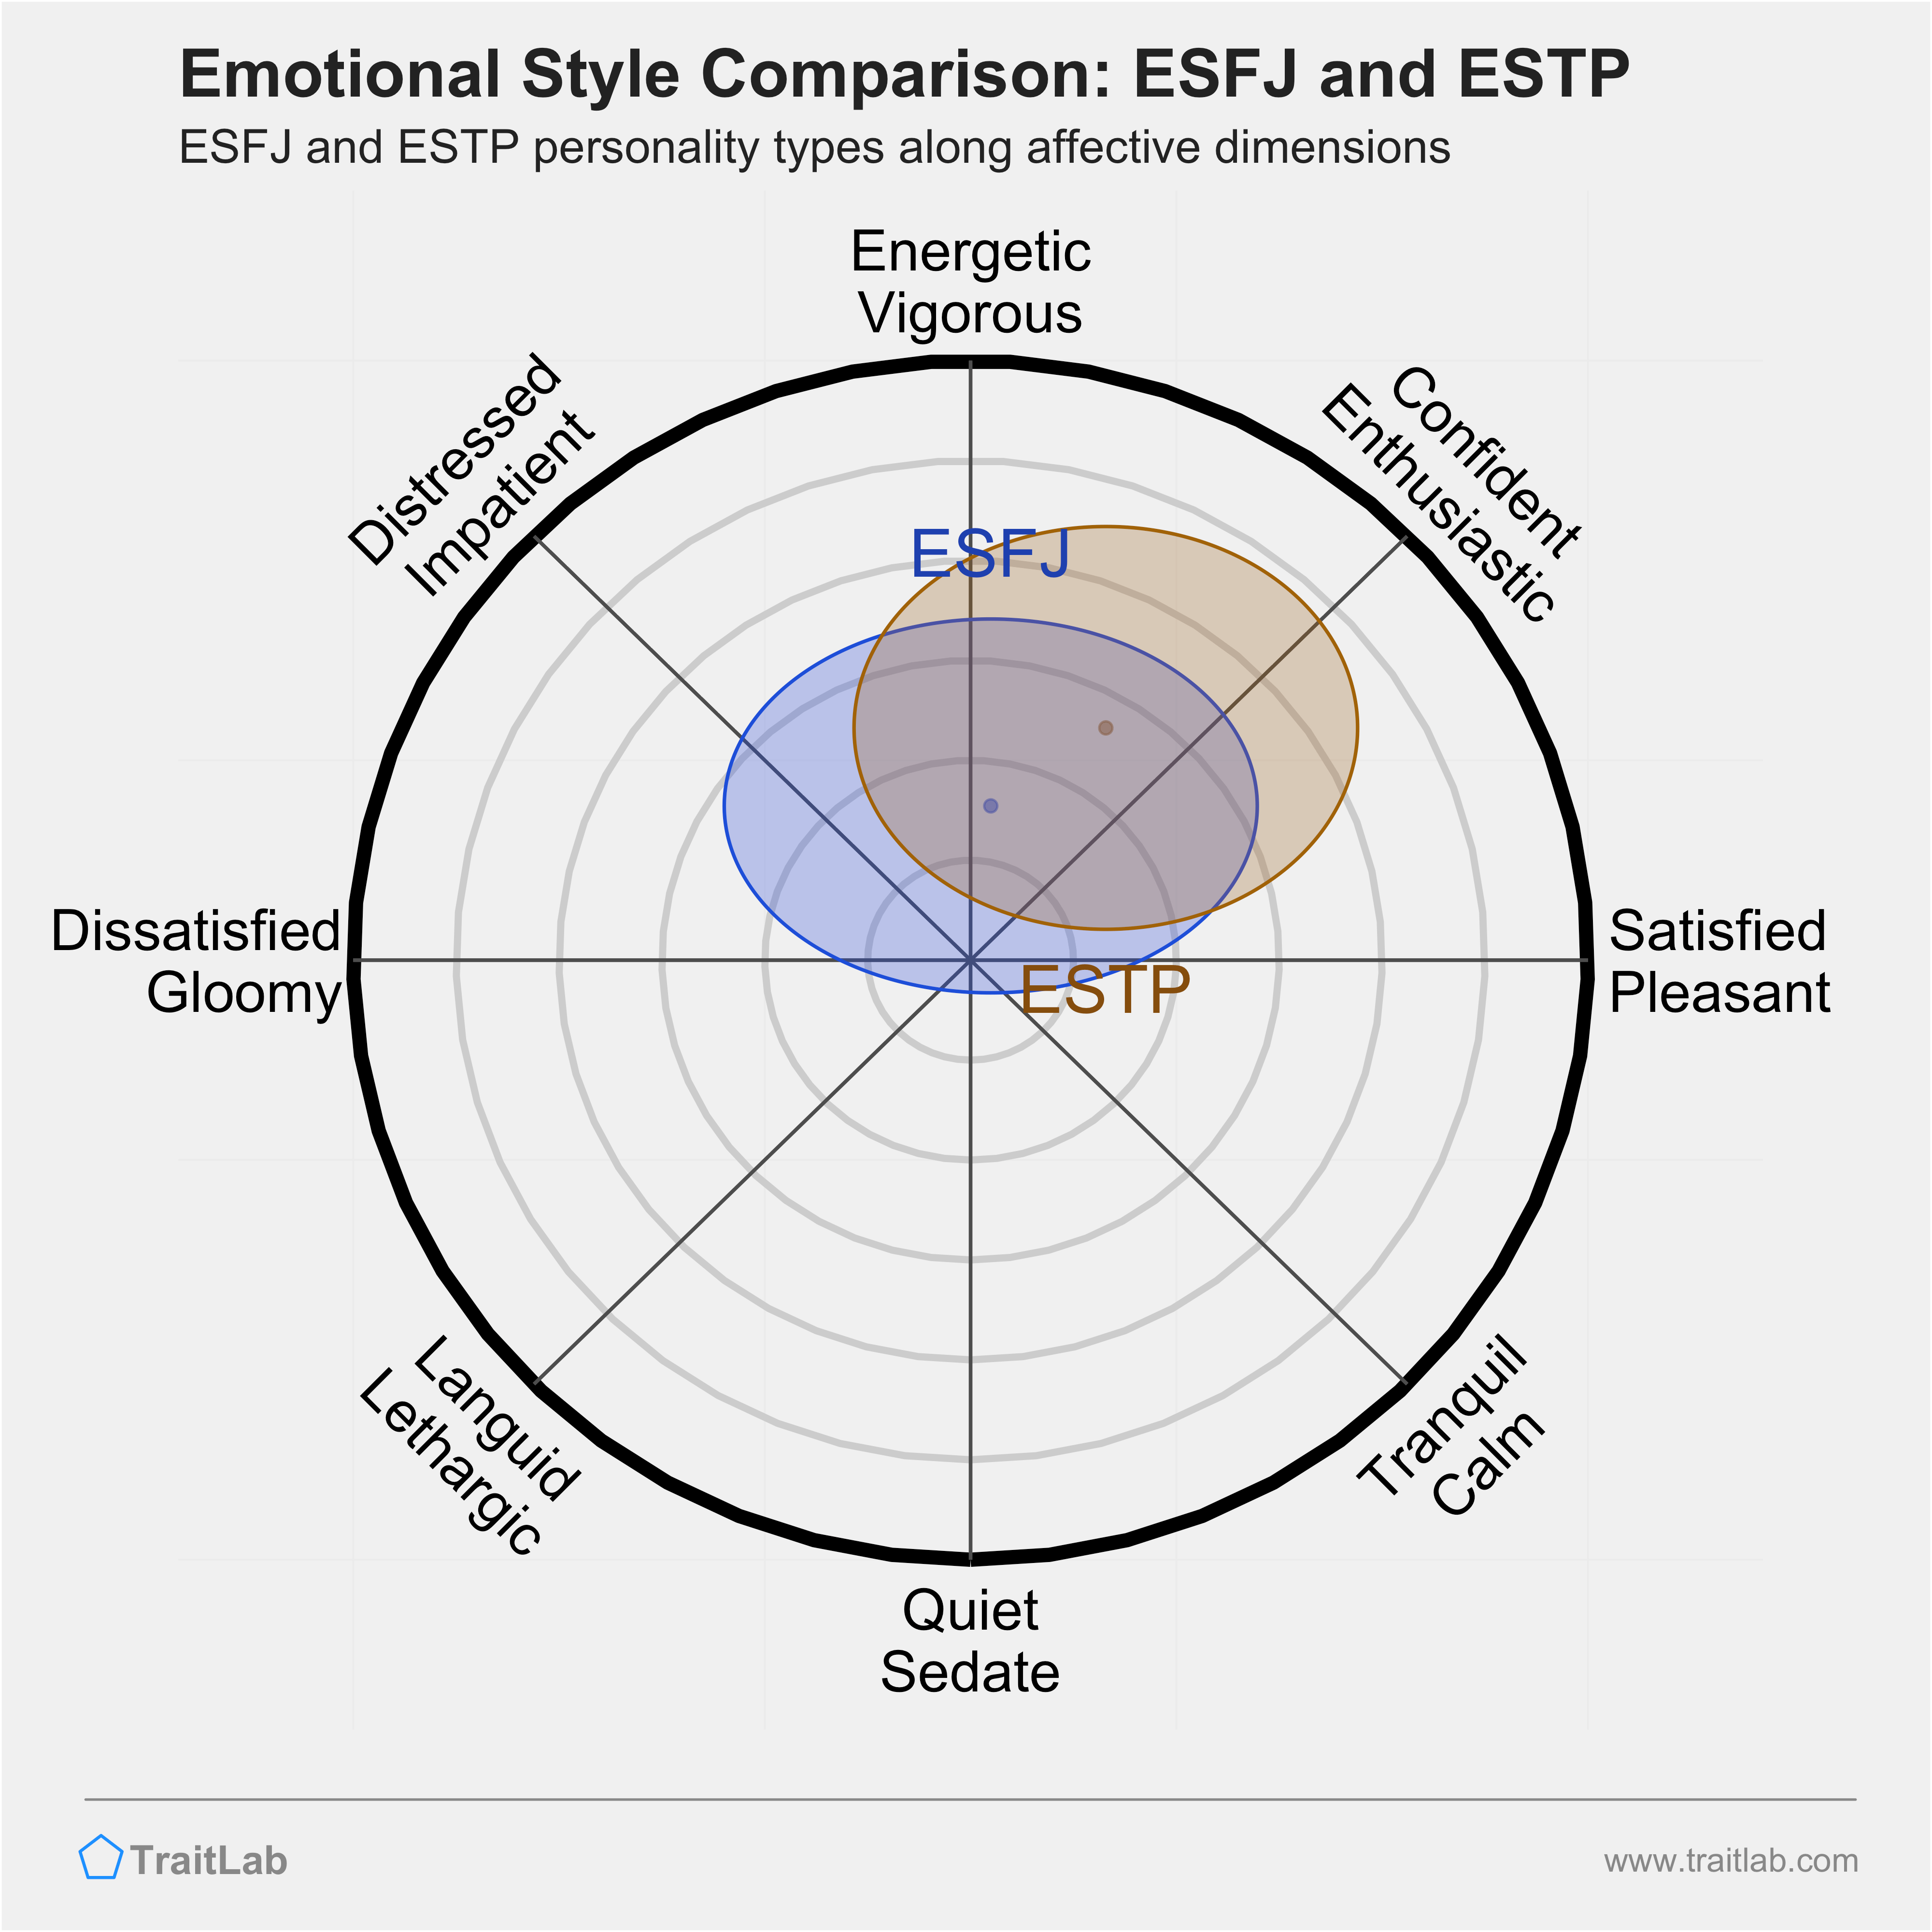 ESFJ and ESTP comparison across emotional (affective) dimensions